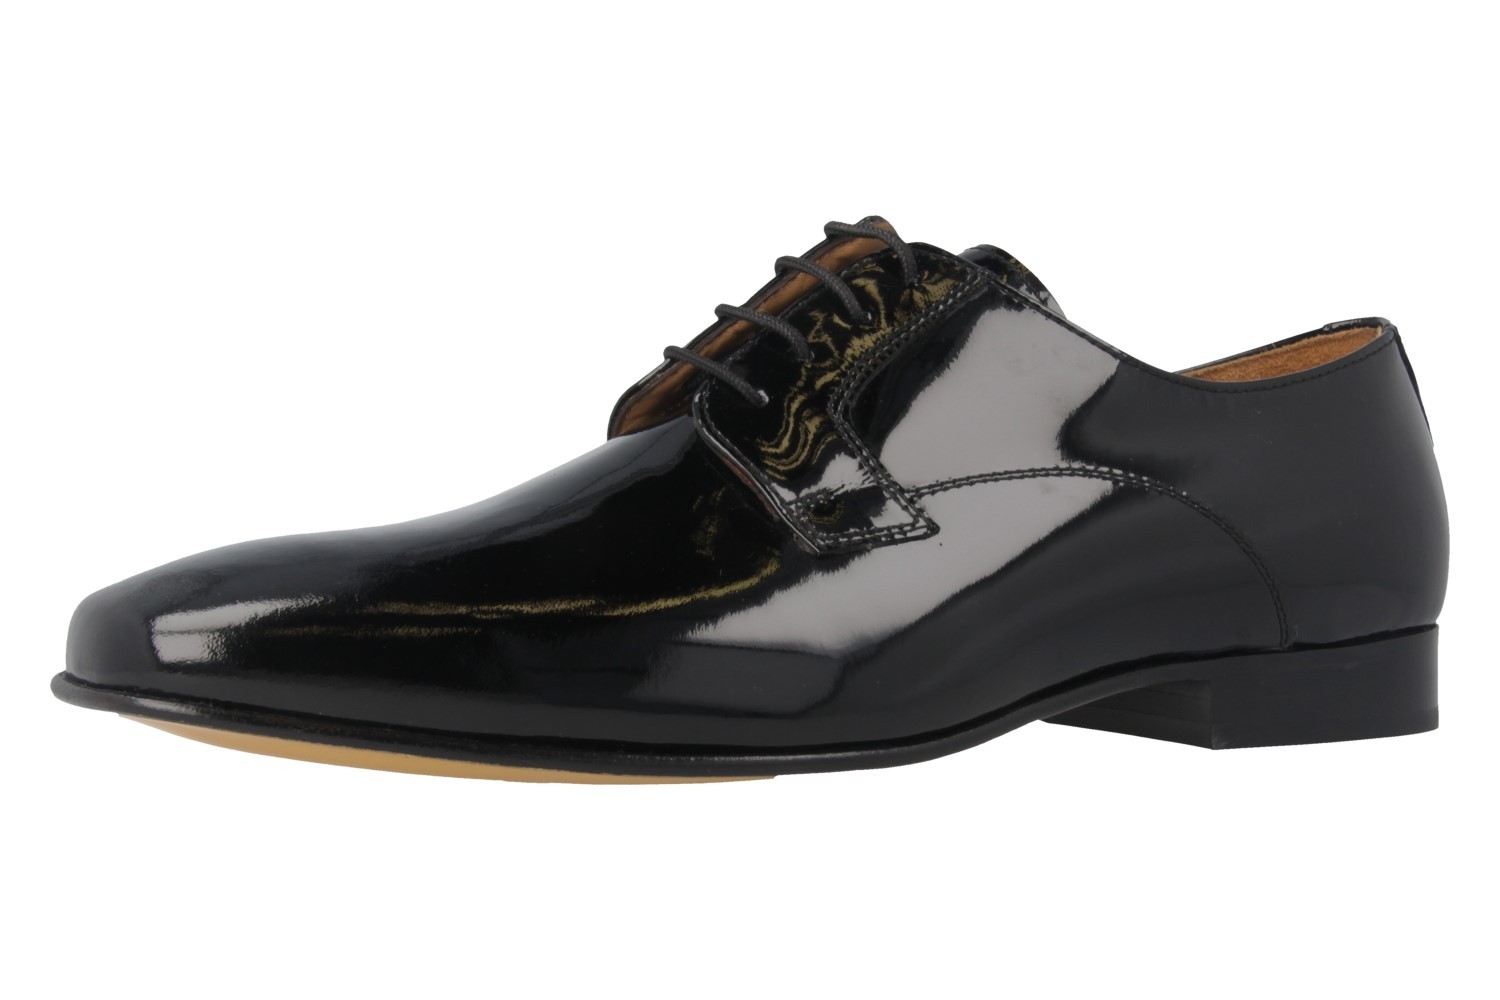 Manz Mali Ago G Business-Schuhe in Übergrößen Schwarz 107019-12-001 große Herrenschuhe